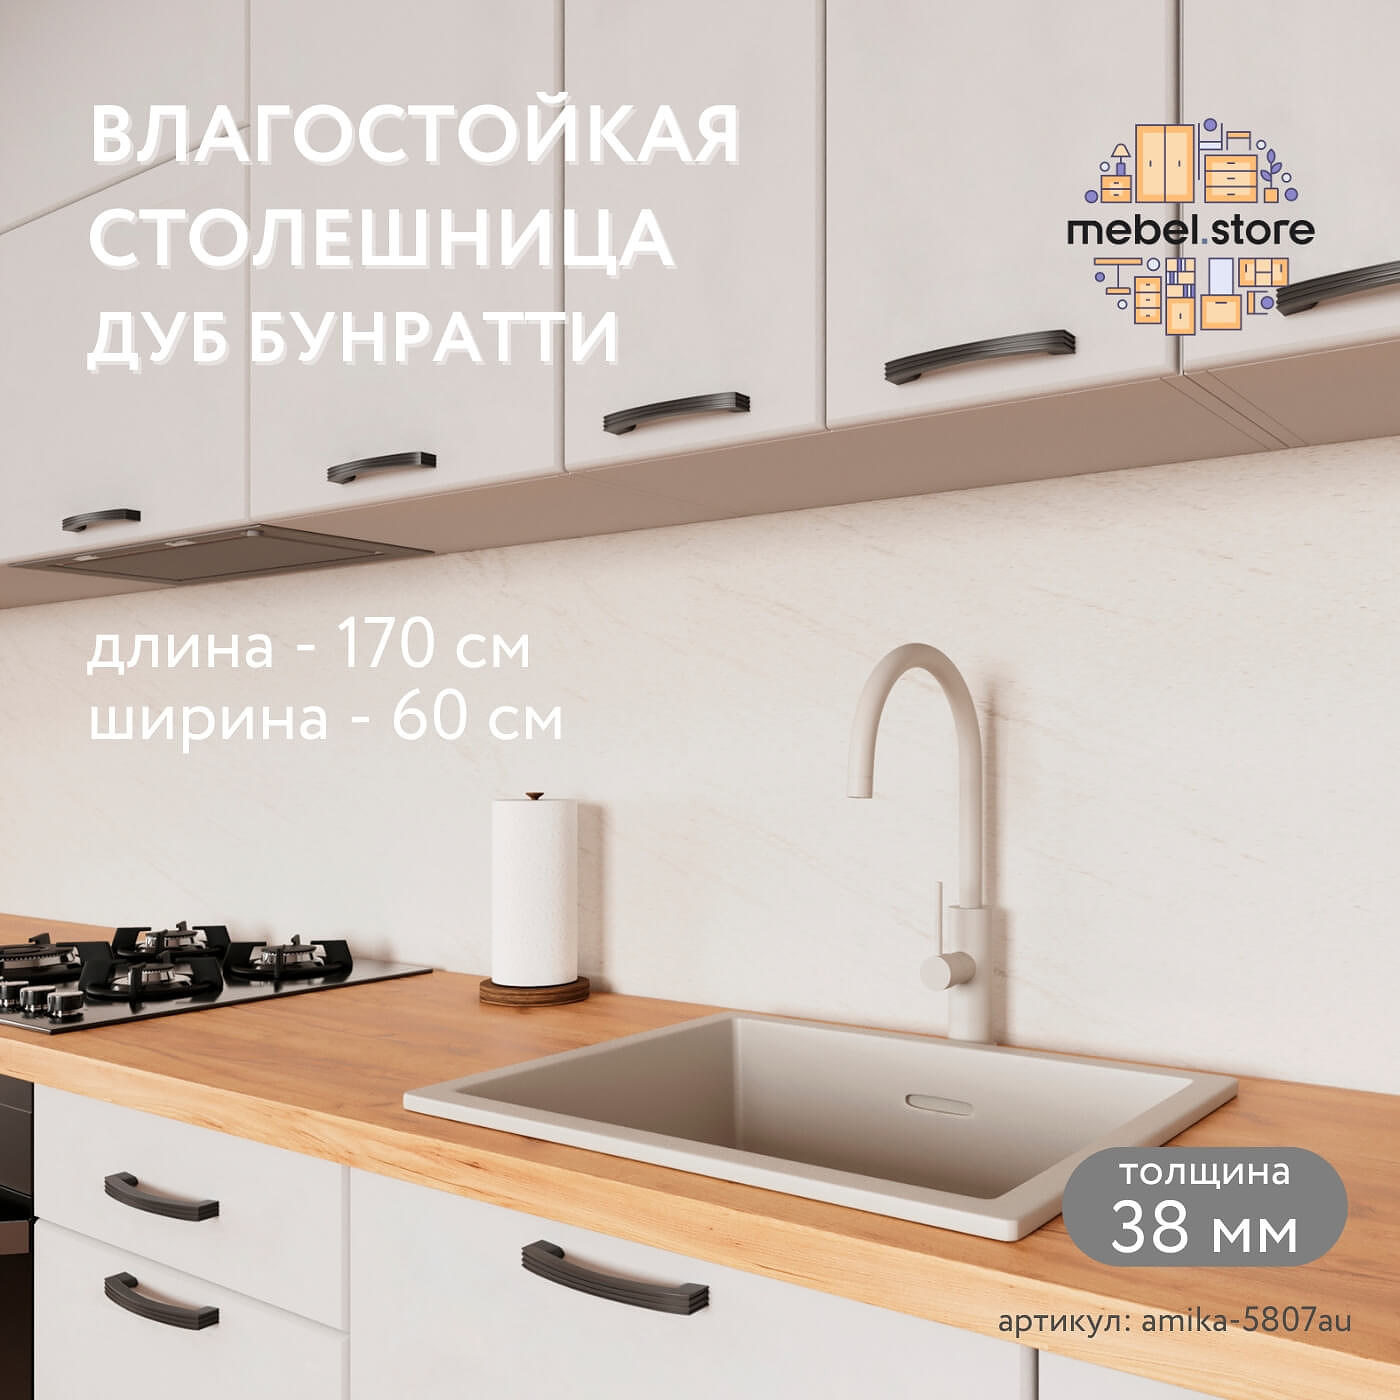 Столешница Амика-5807au минимализм для кухни - фото 1 large